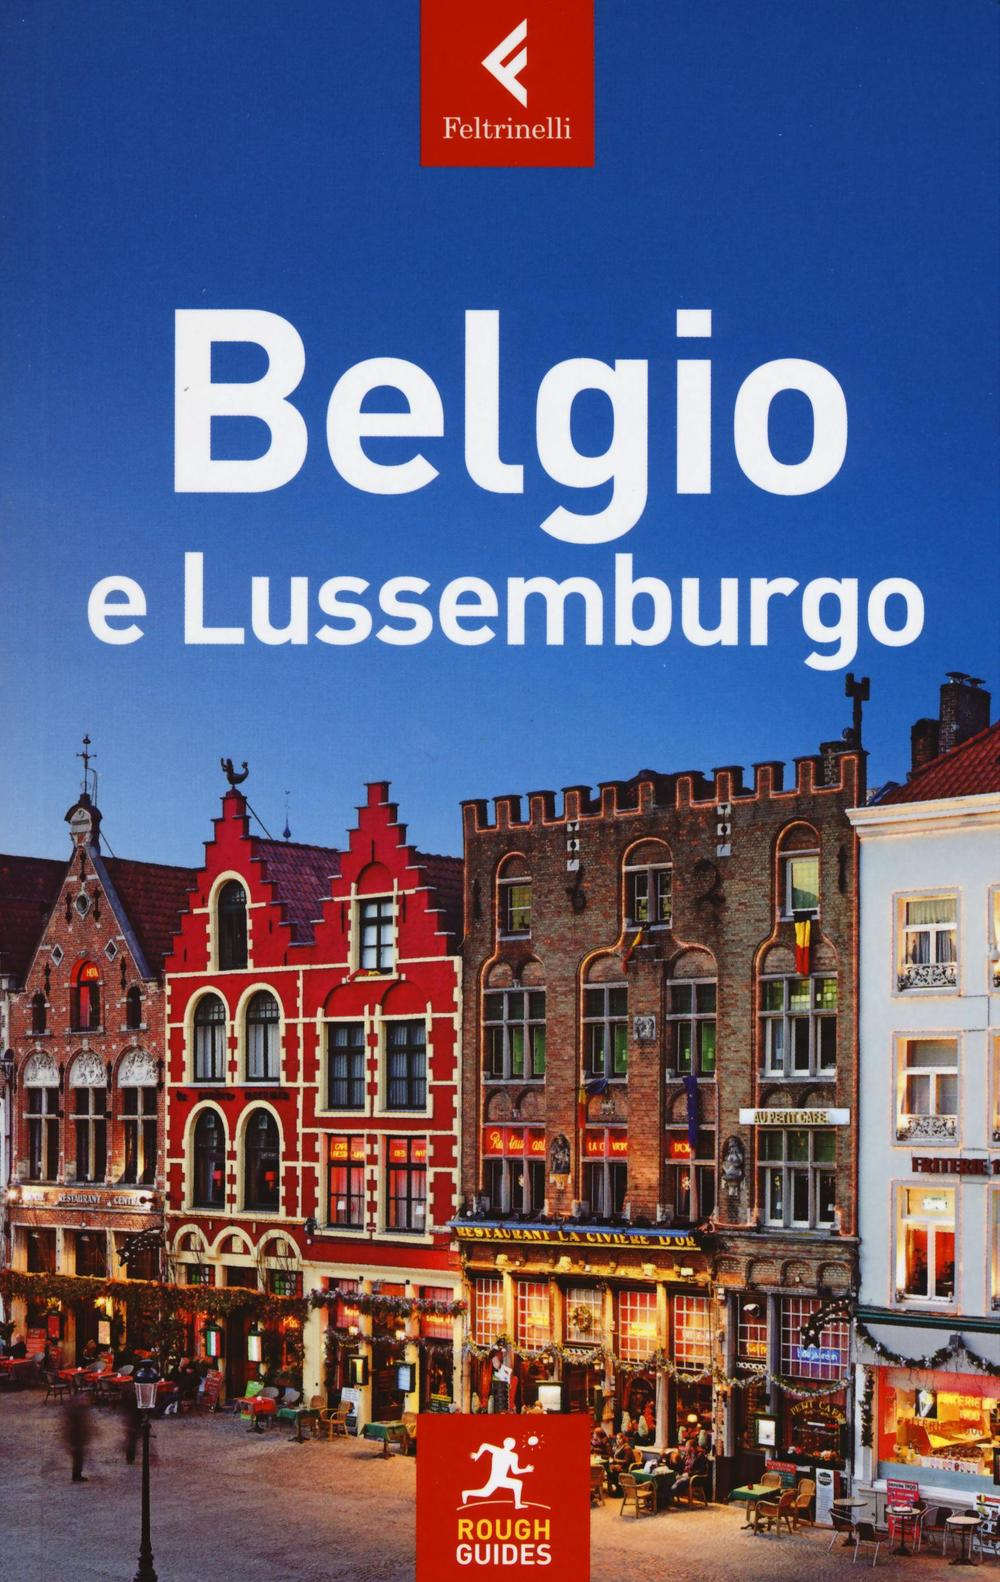 Belgio e Lussemburgo